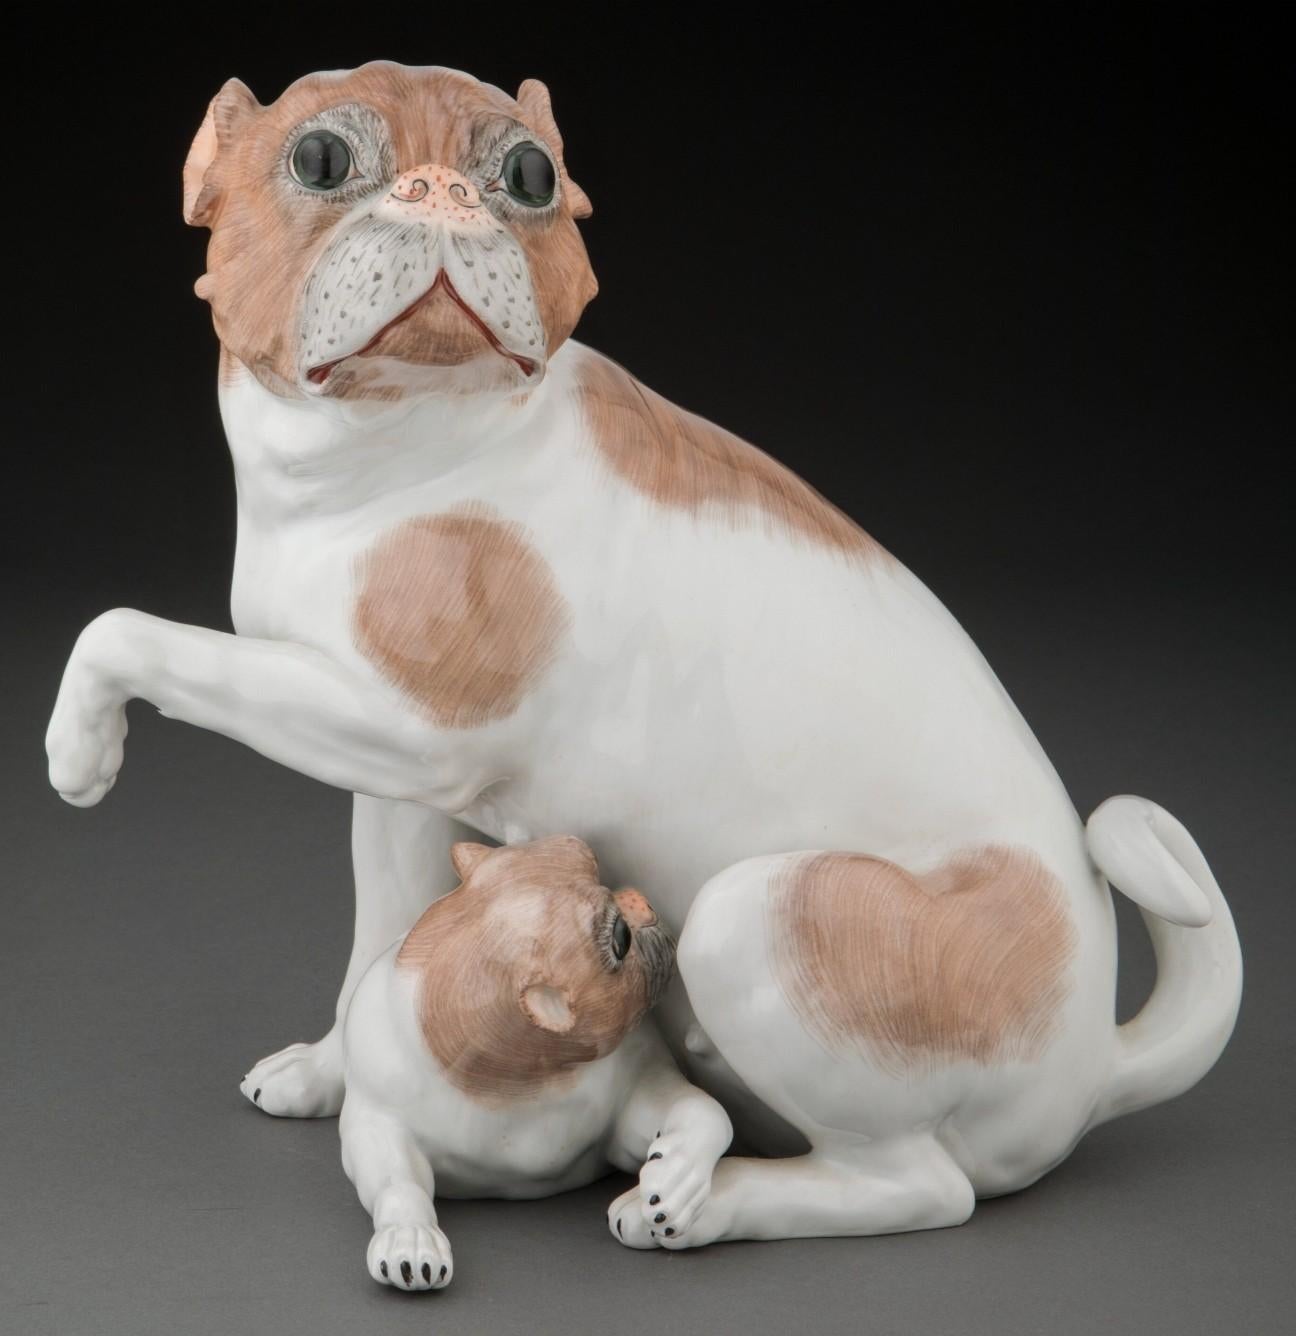 Eine schöne antike Dresdener Porzellan Mops Hunde Figurengruppe entworfen von Carl Thieme von Potschappel, Sachsen, Deutschland. Außergewöhnliche Porzellanplastik aus dem frühen 20. Jahrhundert, die eine Mopsmutter mit säugendem Welpen darstellt.